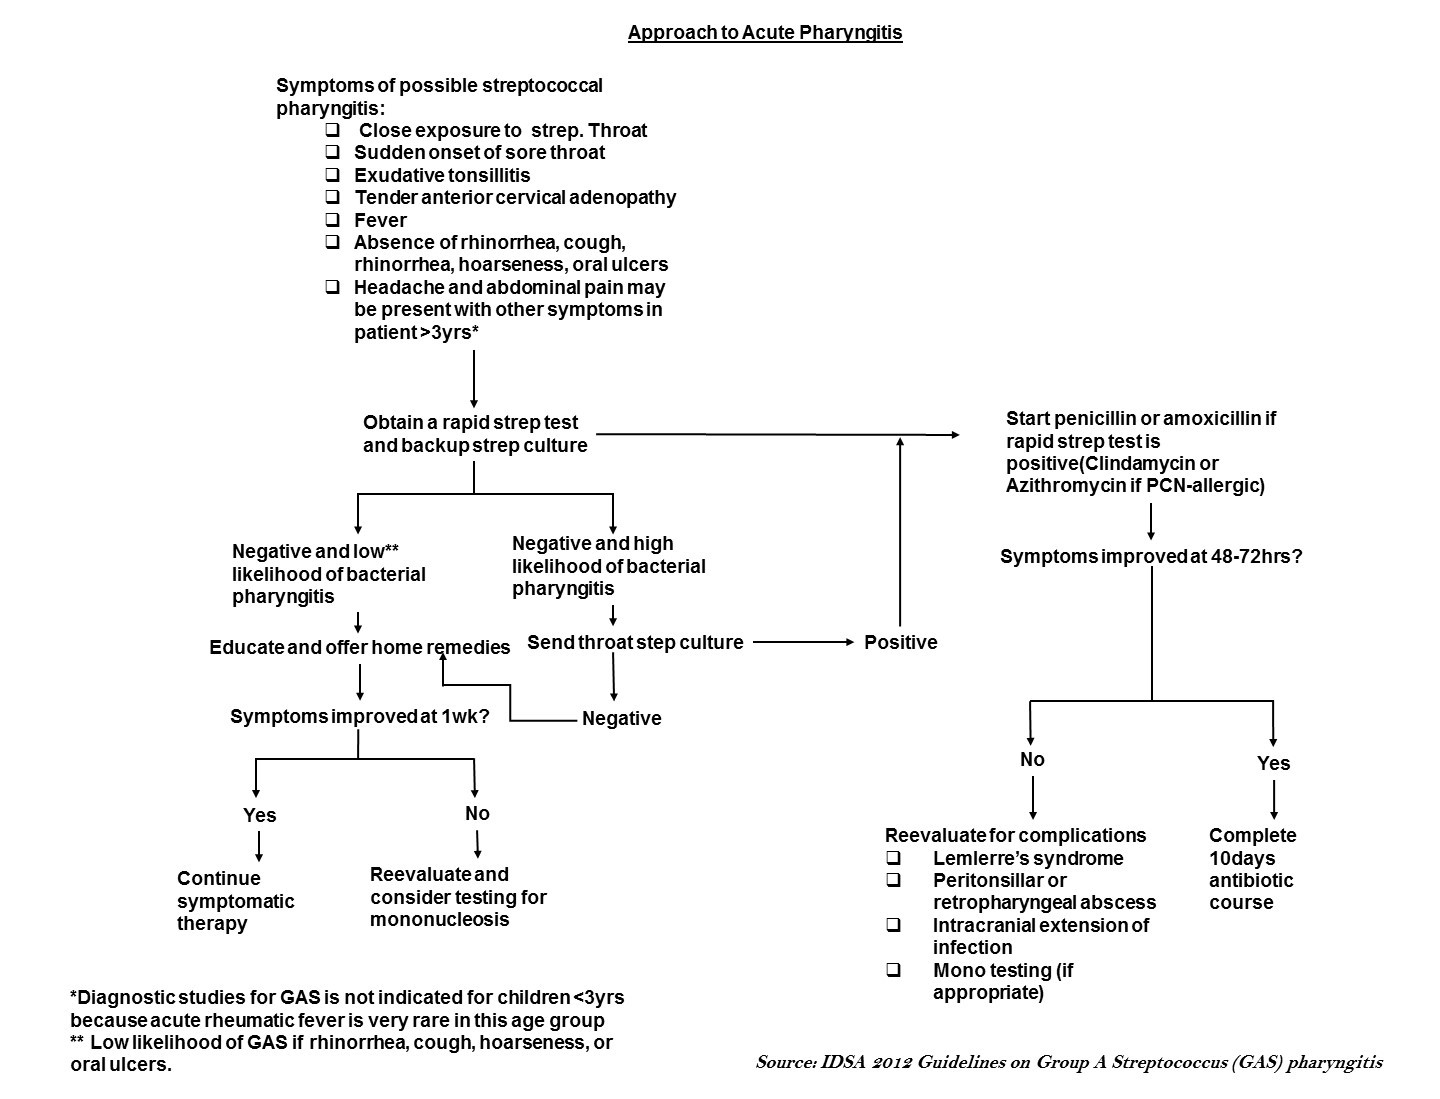 File:Approach to acute pharyngitis.jpg